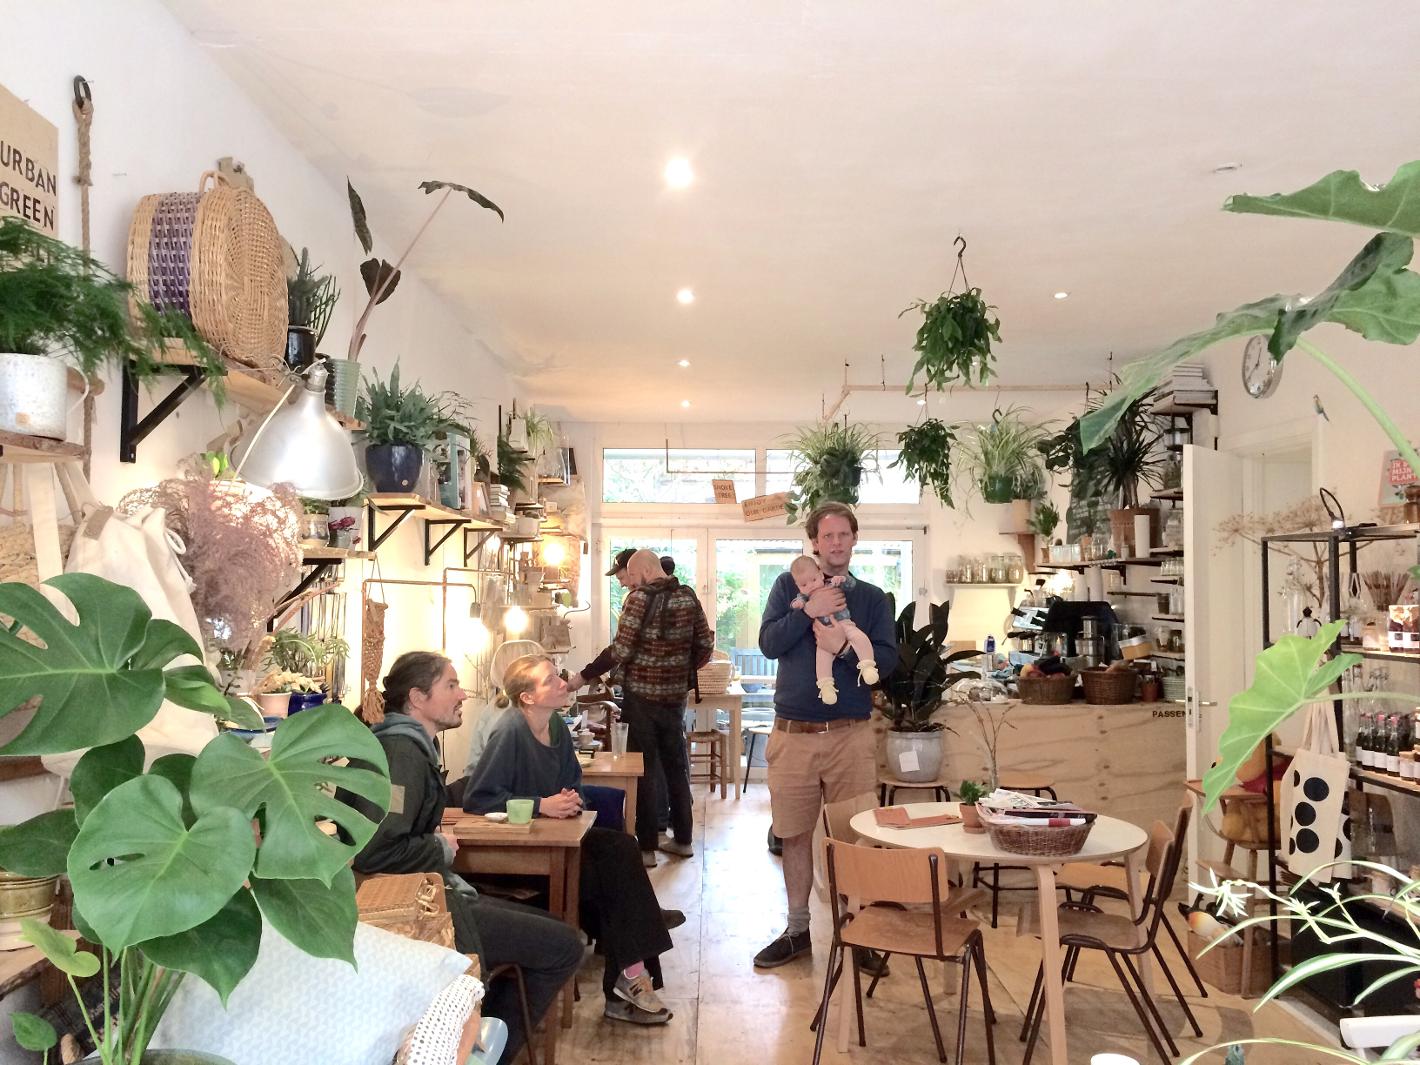 Photo Bar en Zo in Den Haag, Eat & drink, Buy home accessories, Drink coffee tea - #2